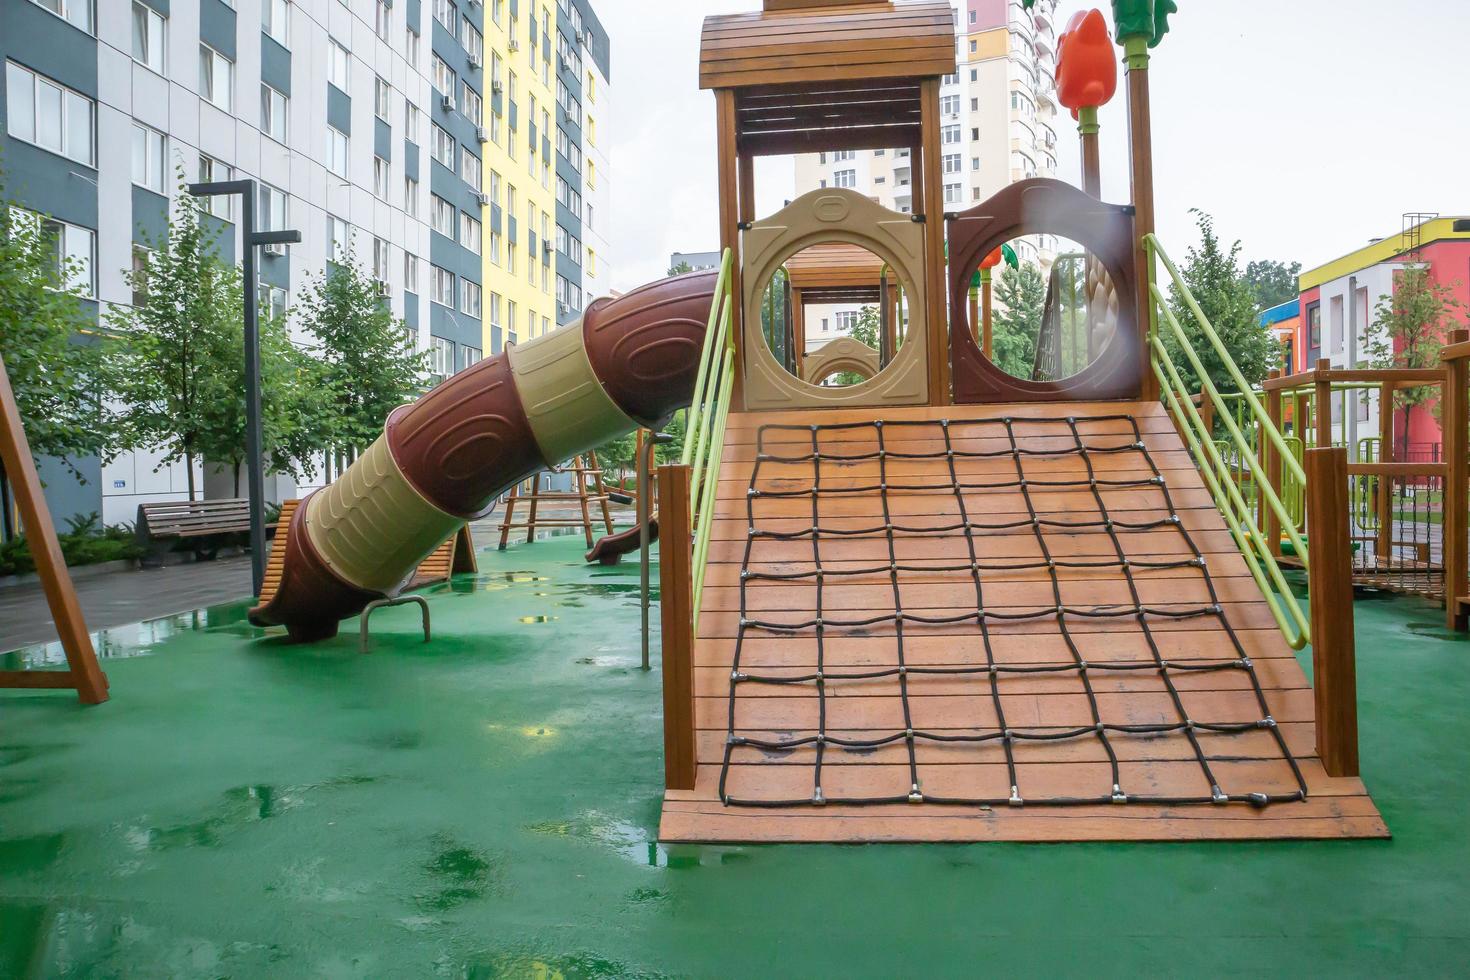 o pátio de um prédio alto com um grande playground moderno feito de madeira e plástico em um dia chuvoso de verão sem pessoas. ucrânia, kiev - 19 de agosto de 2021. foto